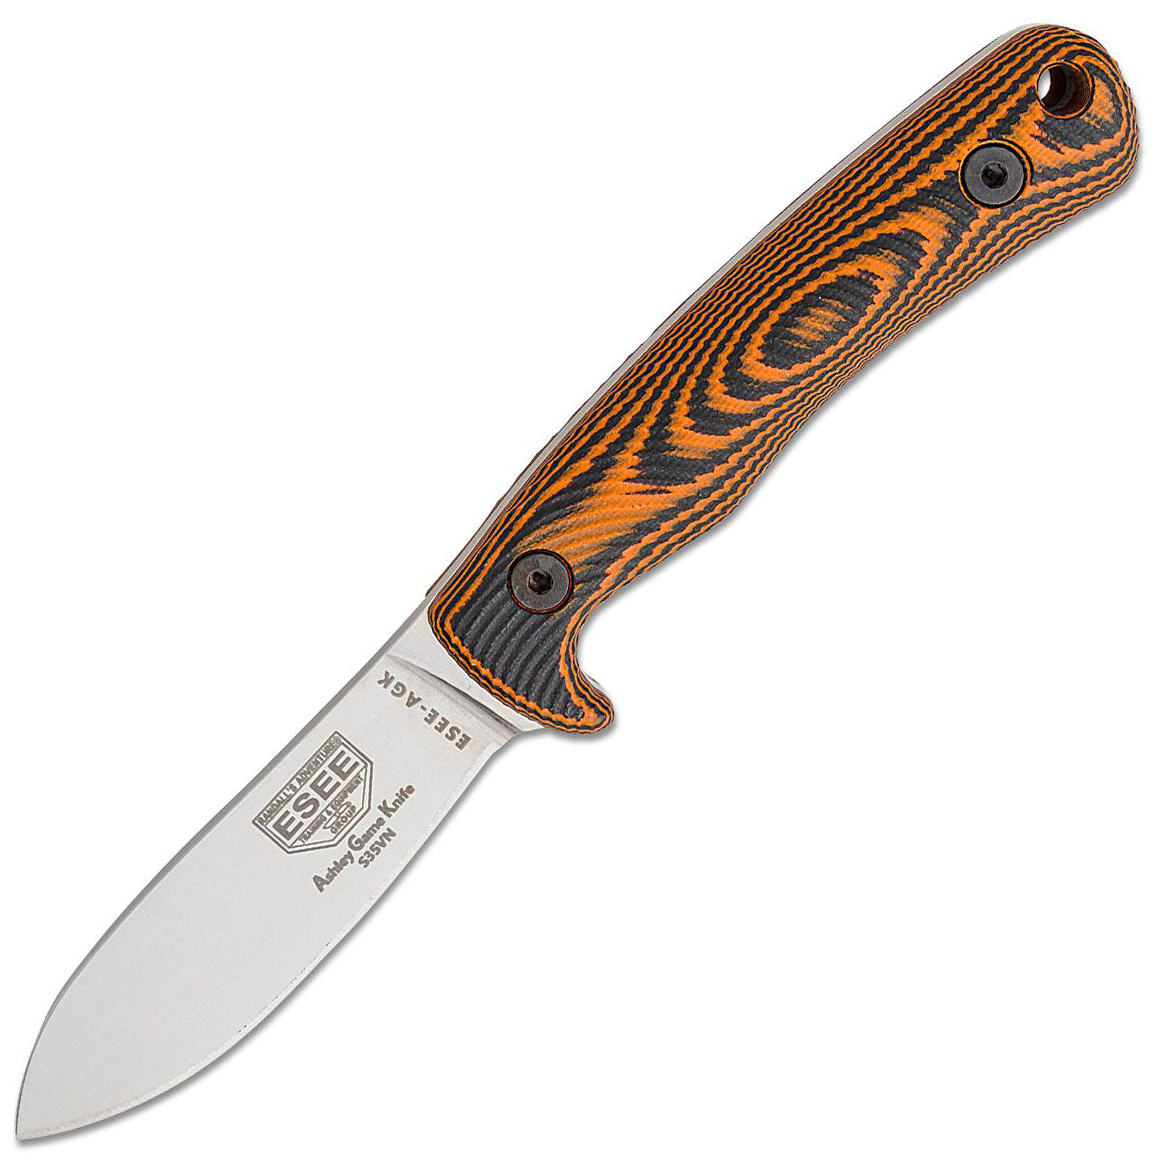 ESEE-AGK35V-OR ESEE HUNTING KNIFE lovecký nôž 9,1 cm, Stonewash, čierno-oranžová, G10, puzdro Kydex